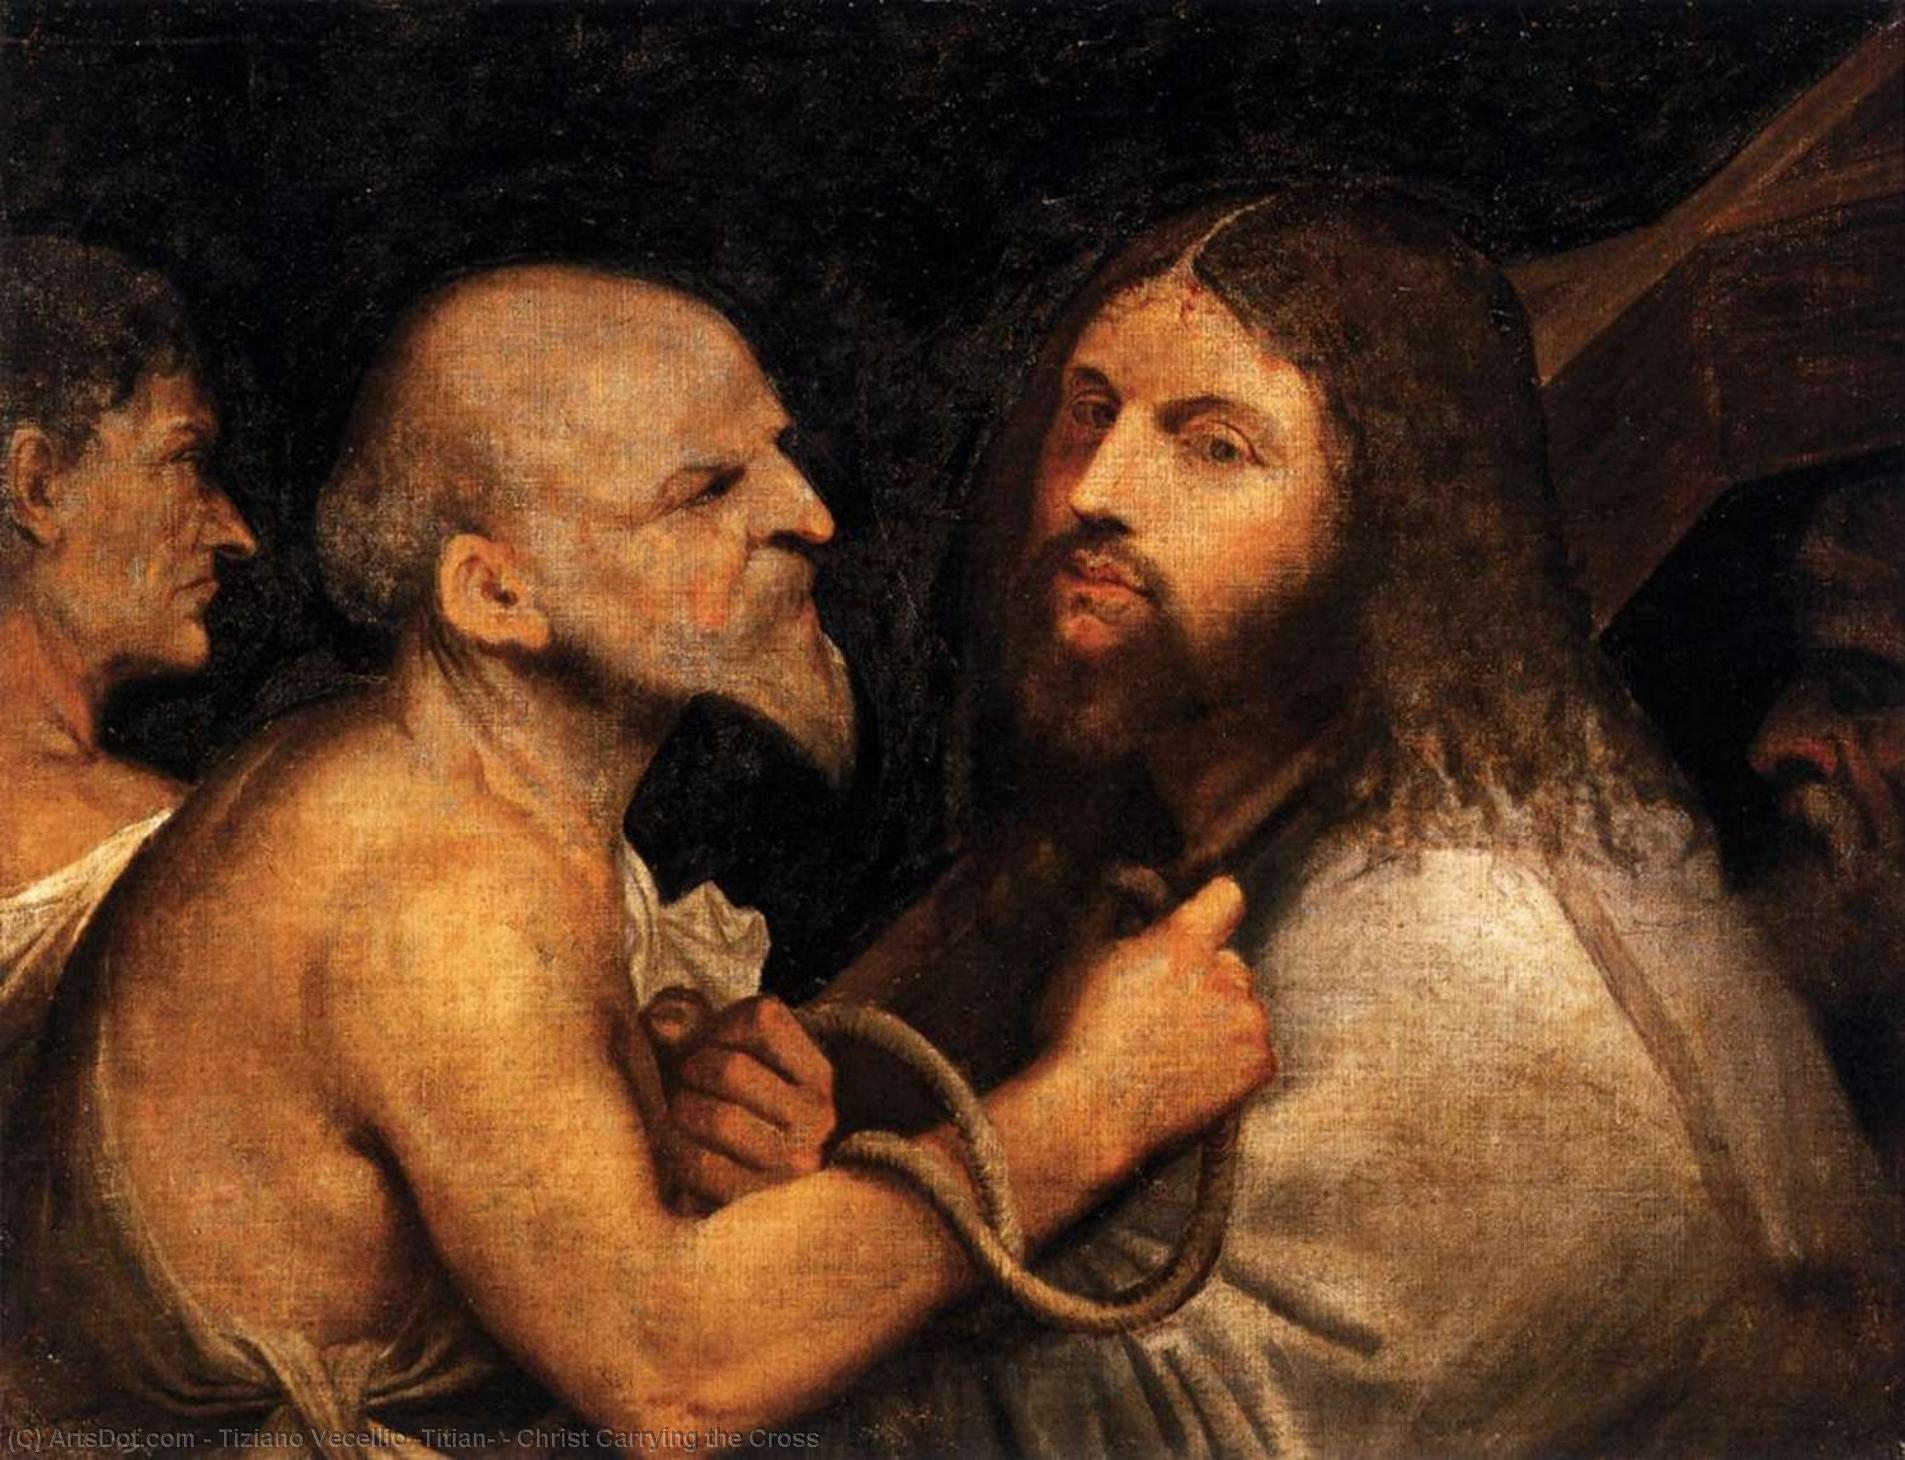 WikiOO.org – 美術百科全書 - 繪畫，作品 Tiziano Vecellio (Titian) - 基督背着十字架